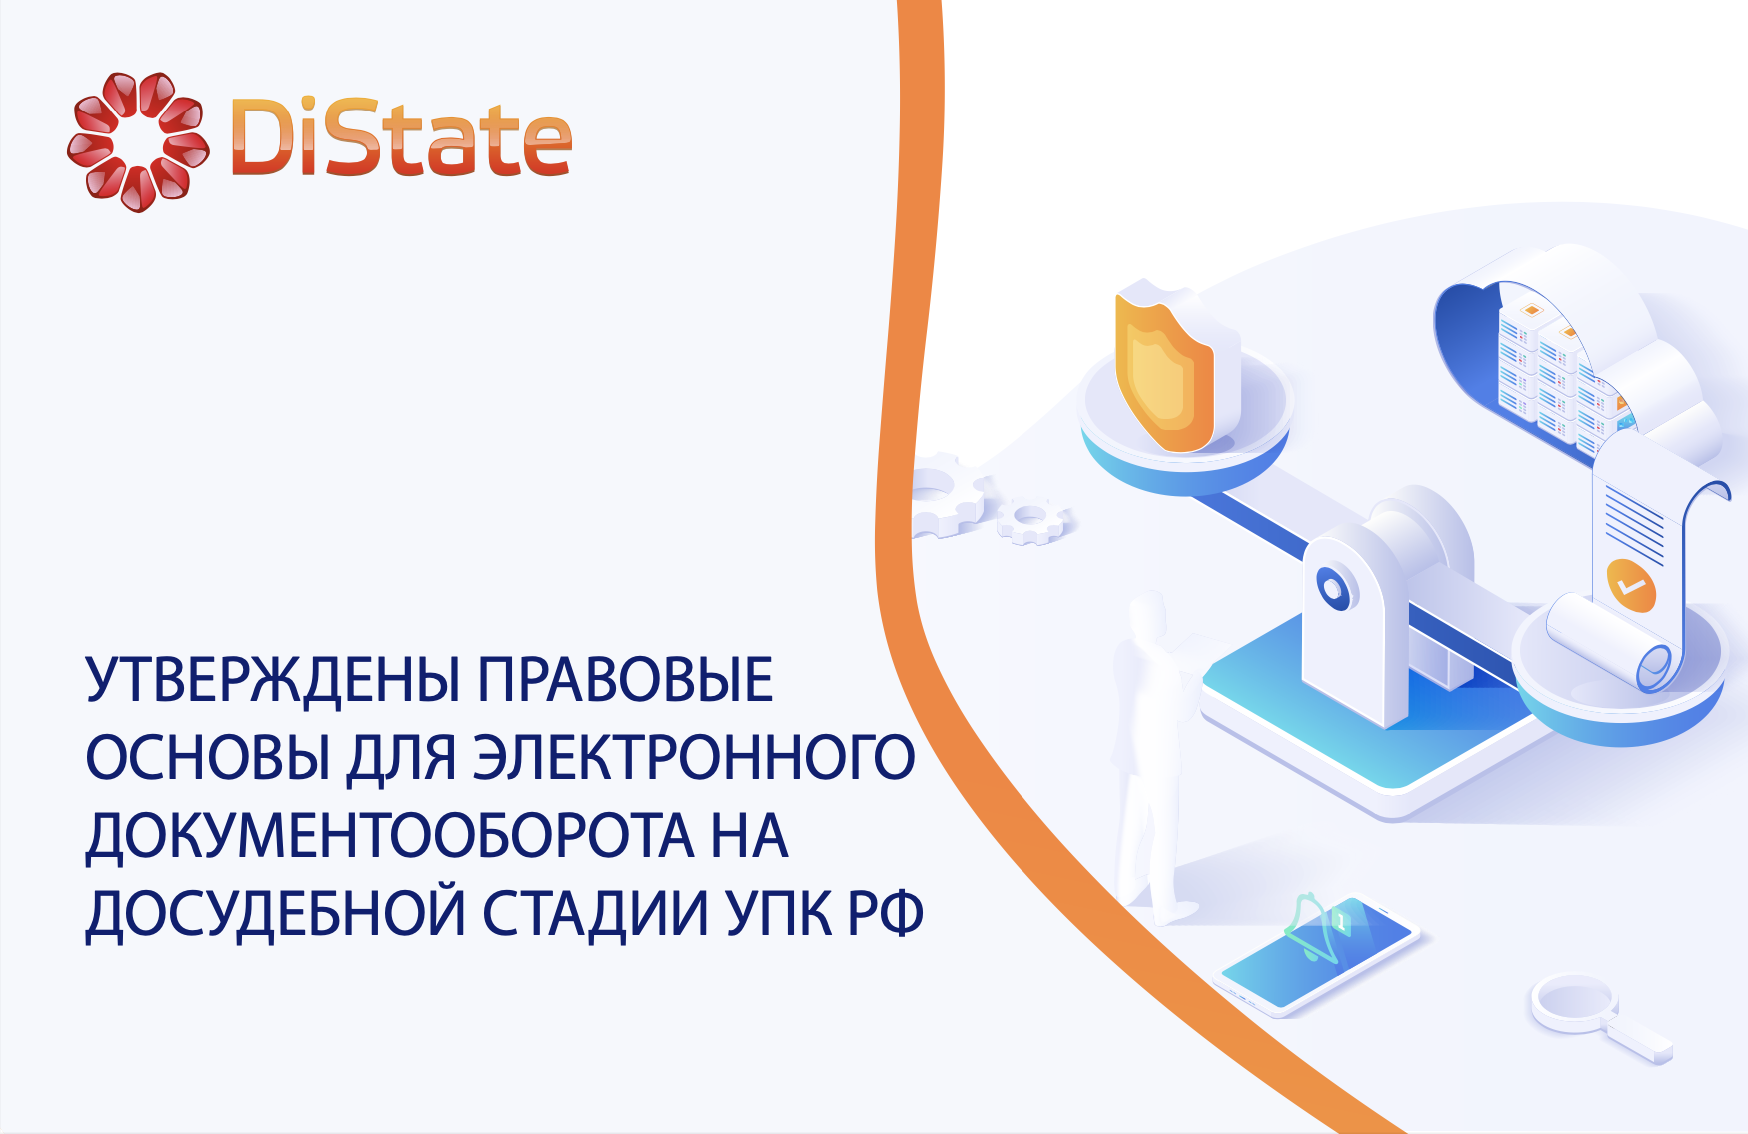 Утверждены правовые основы для электронного документооборота на досудебной стадии УПК РФ